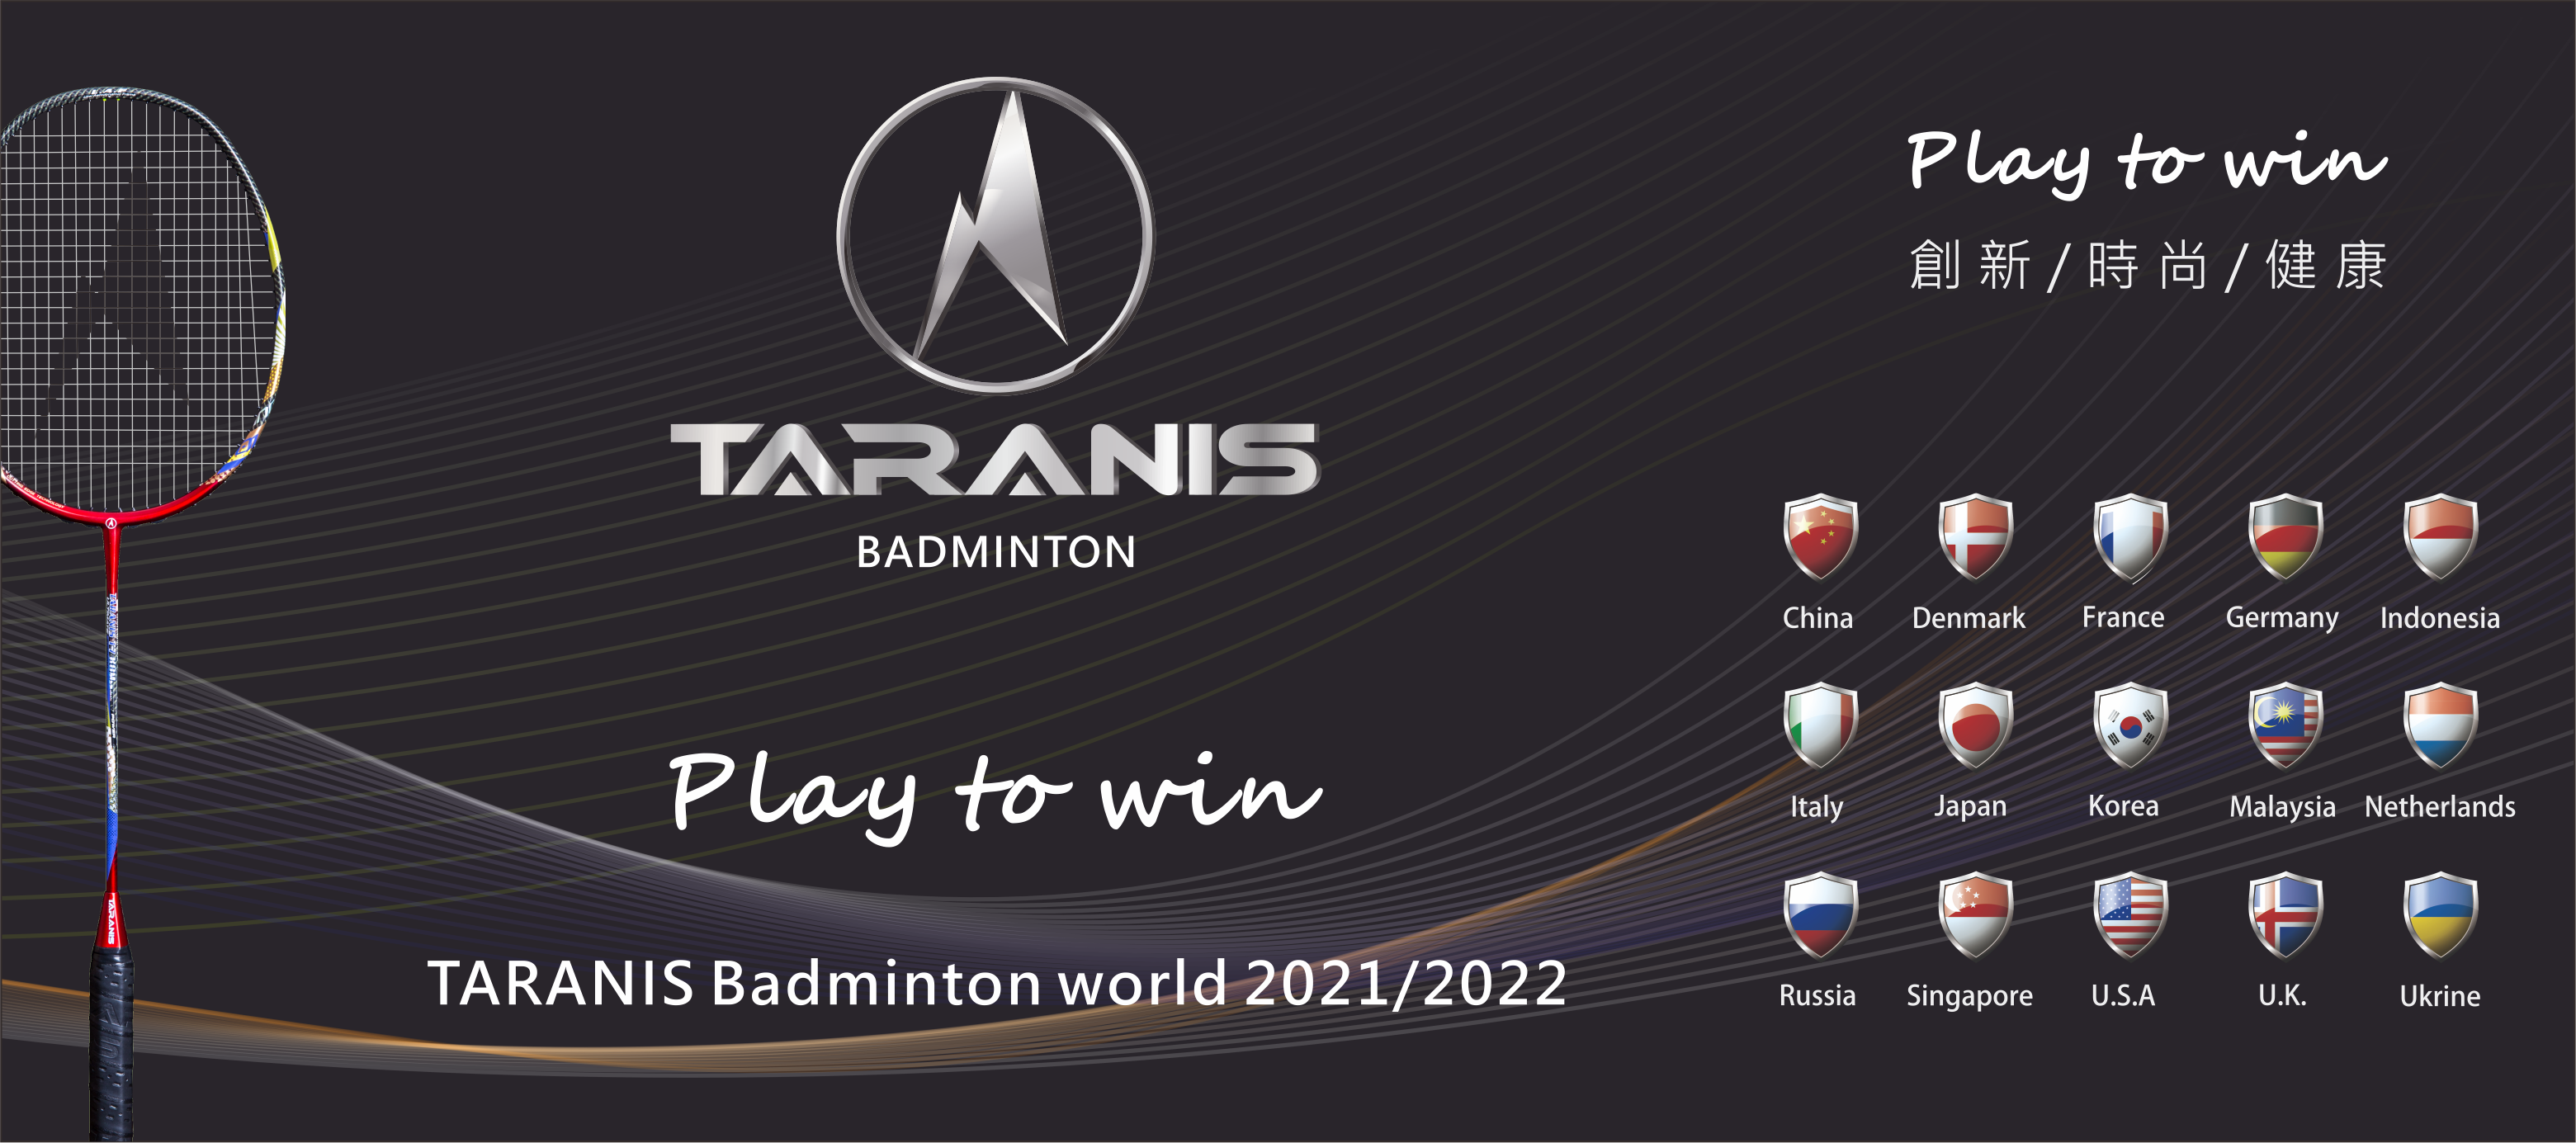 TARANIS Badminton